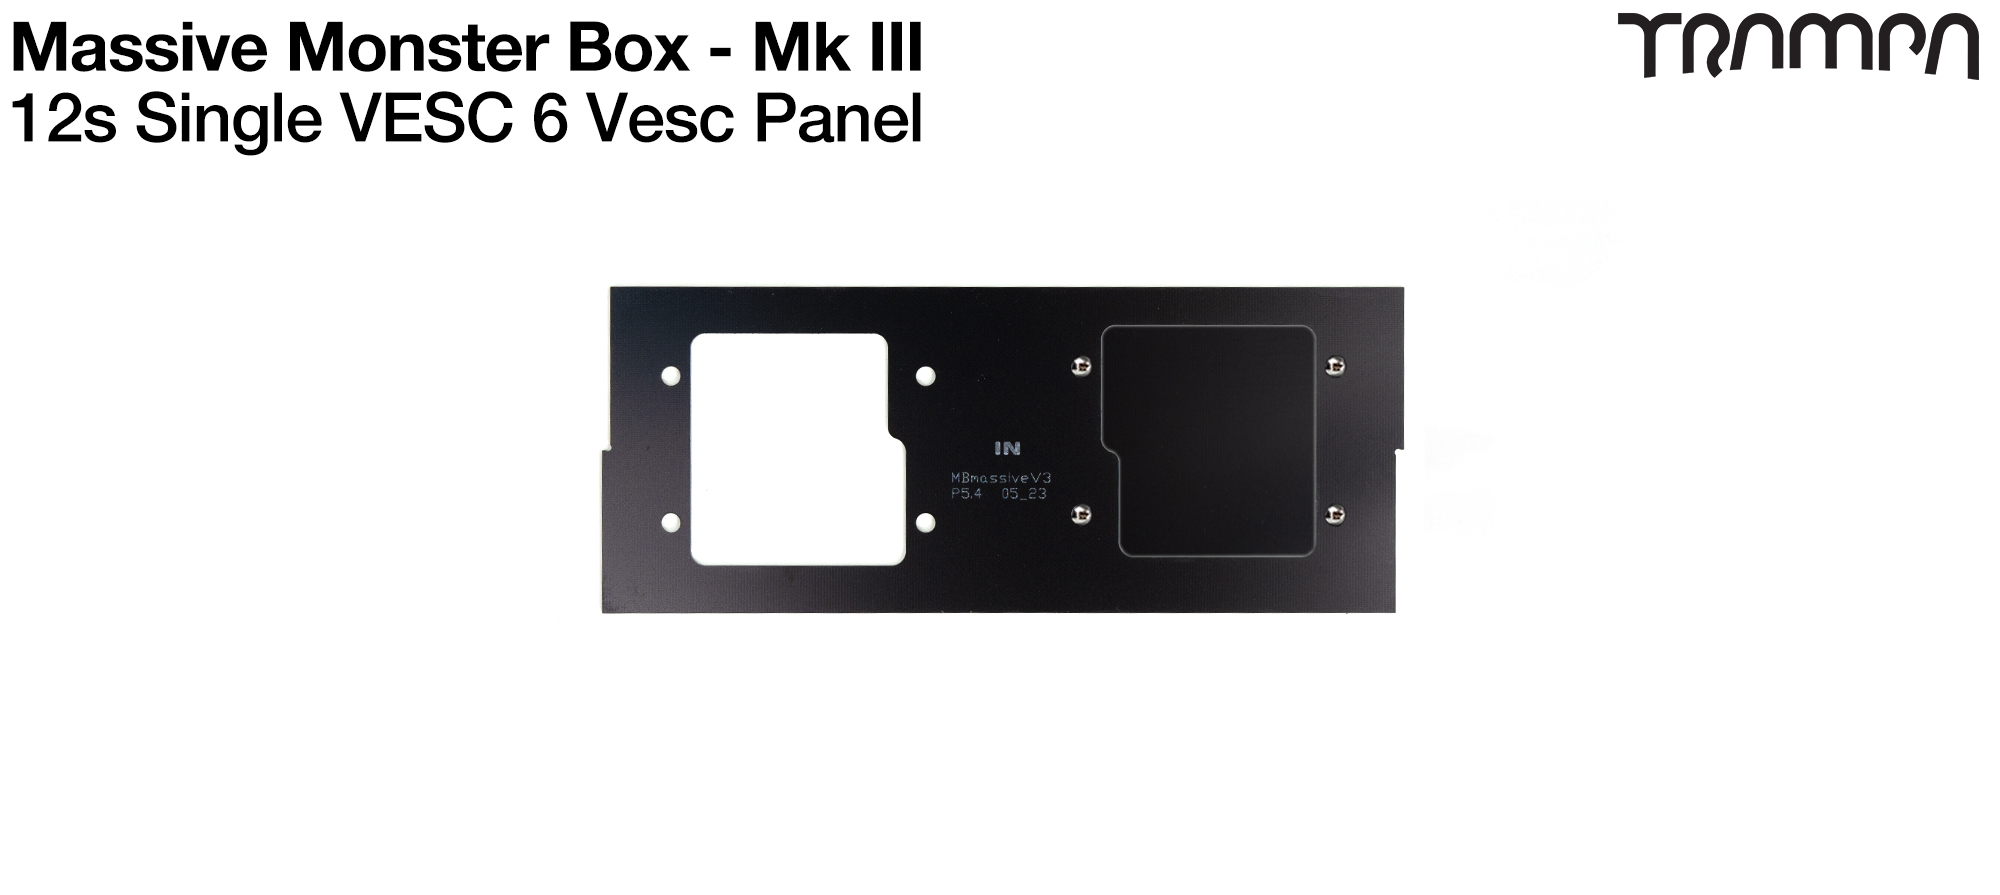 16s MASSIVE Monster Box - Panel to fit 1x VESC 6/75 